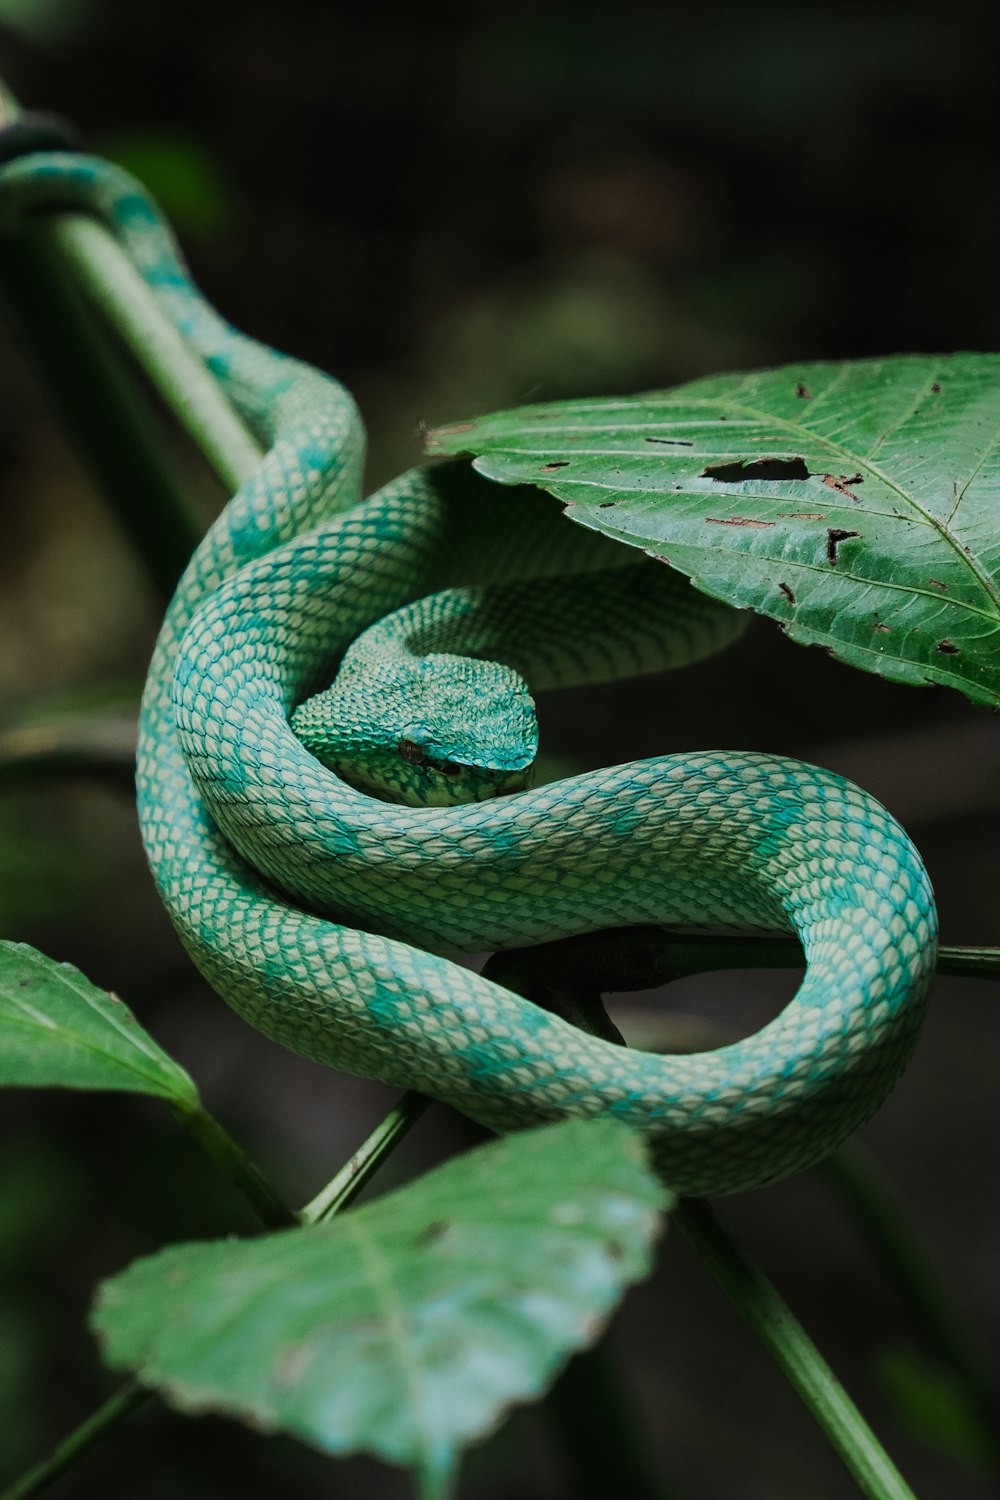 Una serpiente verde está acurrucada en una hoja